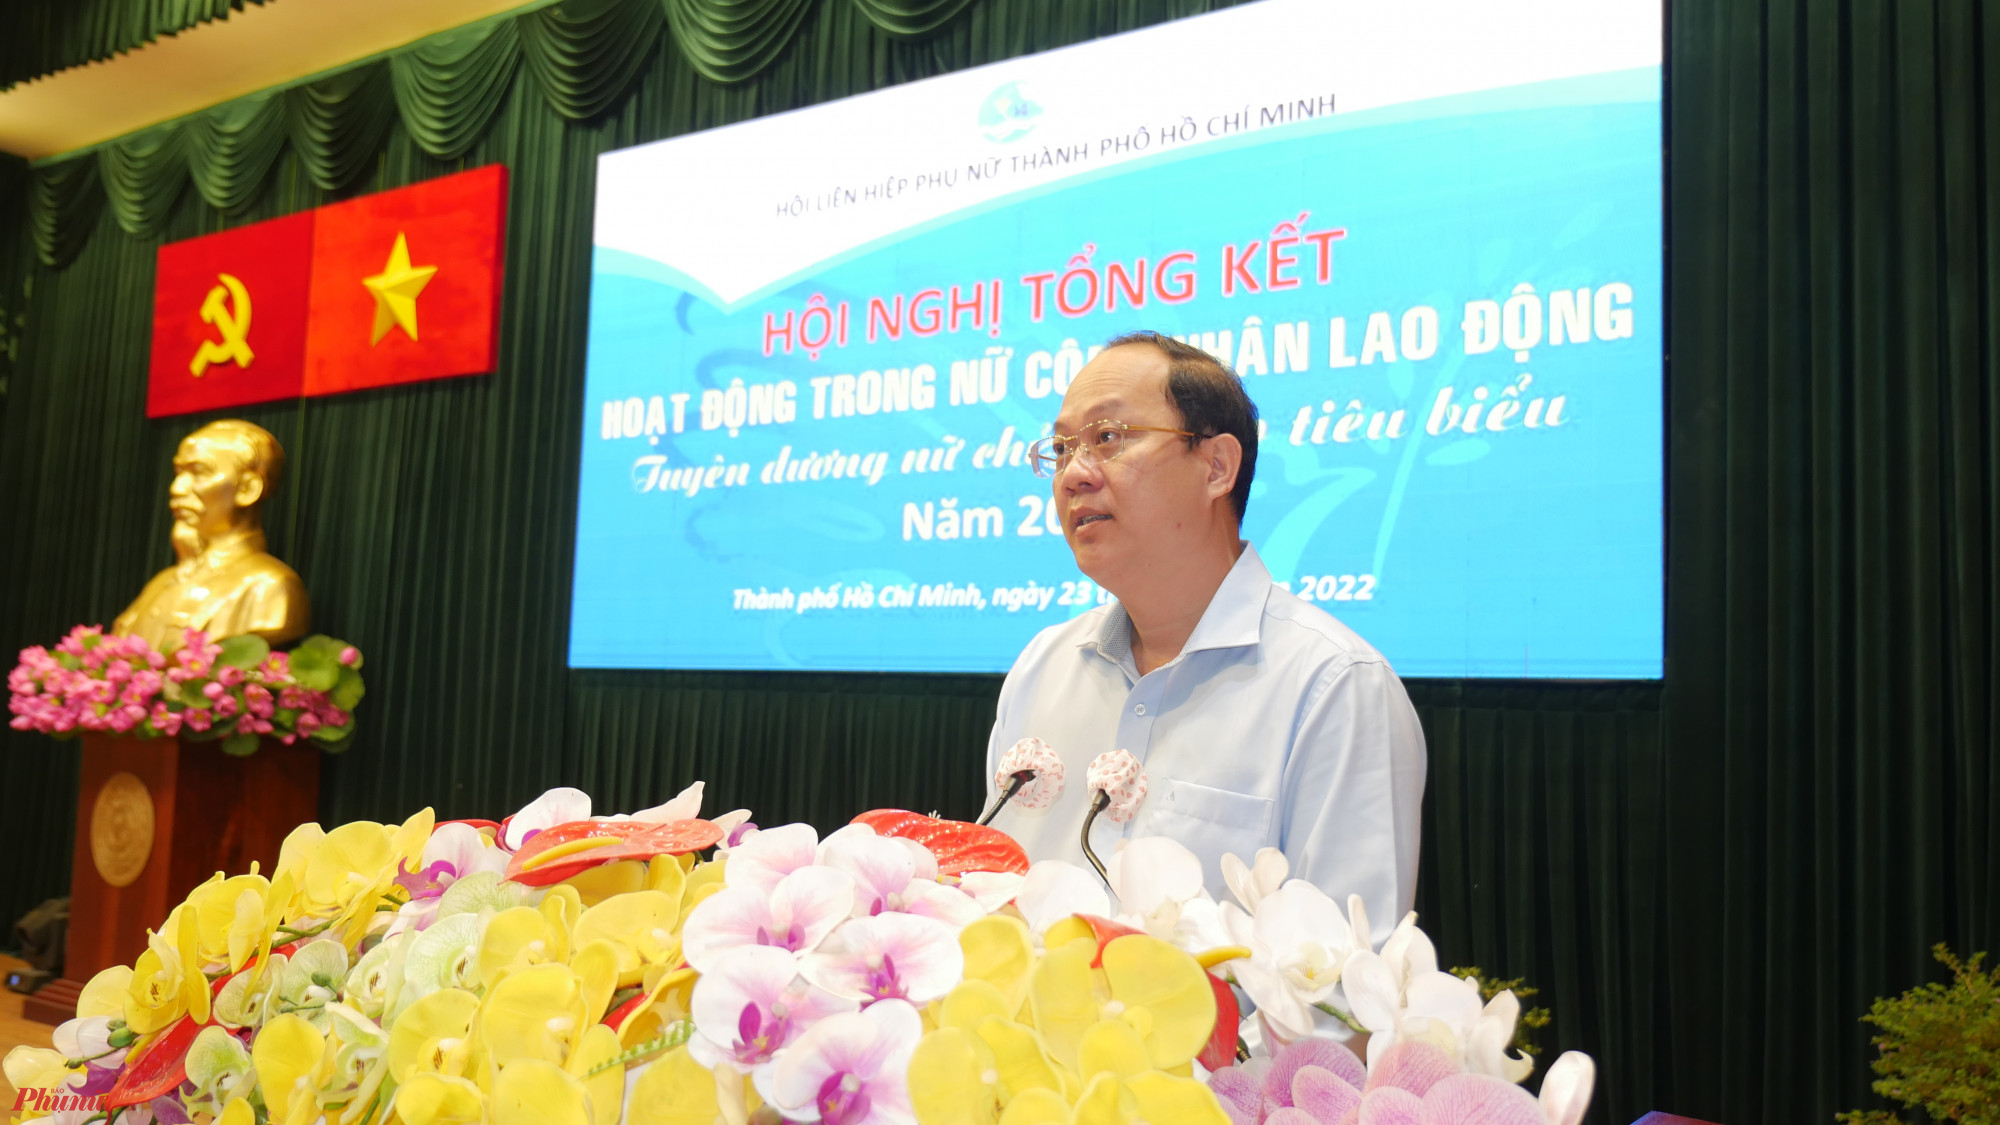 Phó Bí thư Thành ủy TPHCM Nguyễn Hồ Hải cho biết: “Tôi trân trọng và ghi nhận những đóng góp của các chị ban chủ nhiệm, thành viên các câu lạc bộ nữ chủ nhà trọ trong giai đoạn thành phố ứng phó với dịch bệnh COVID-19